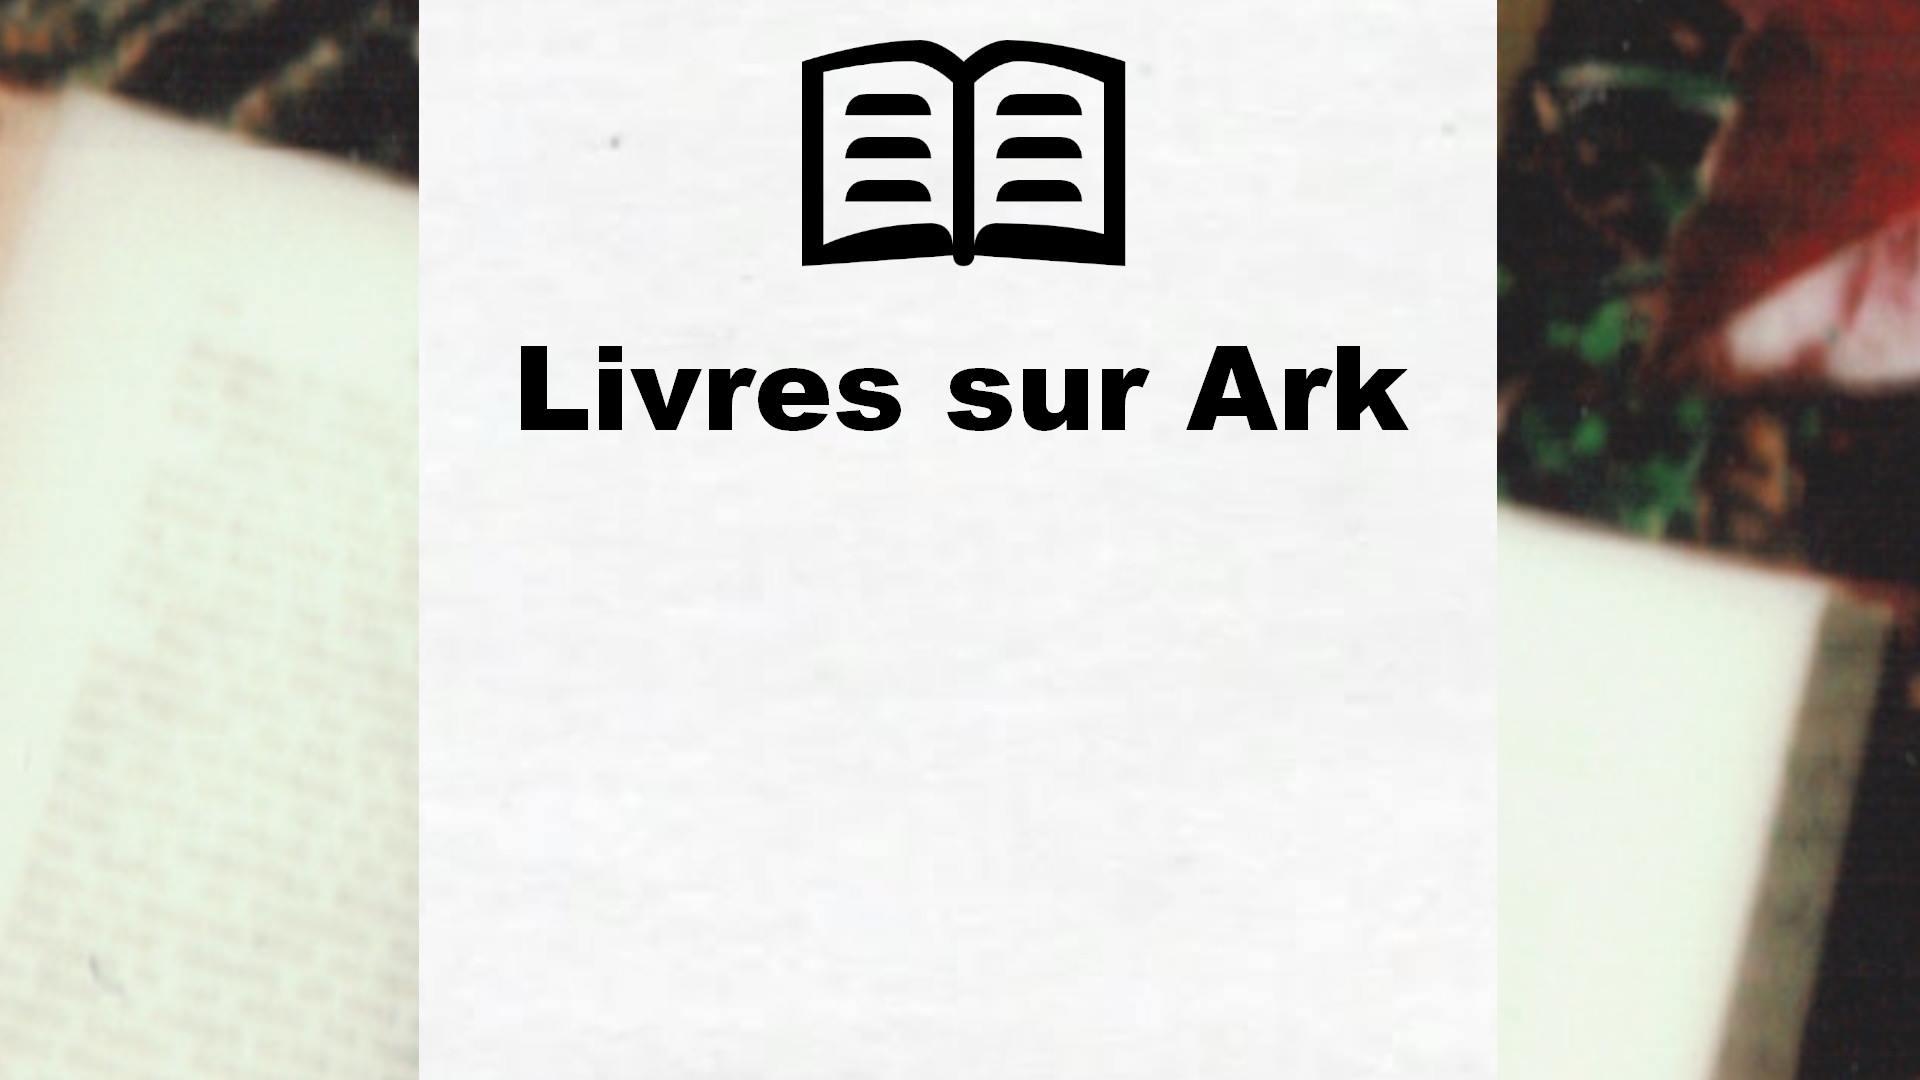 Livres sur Ark